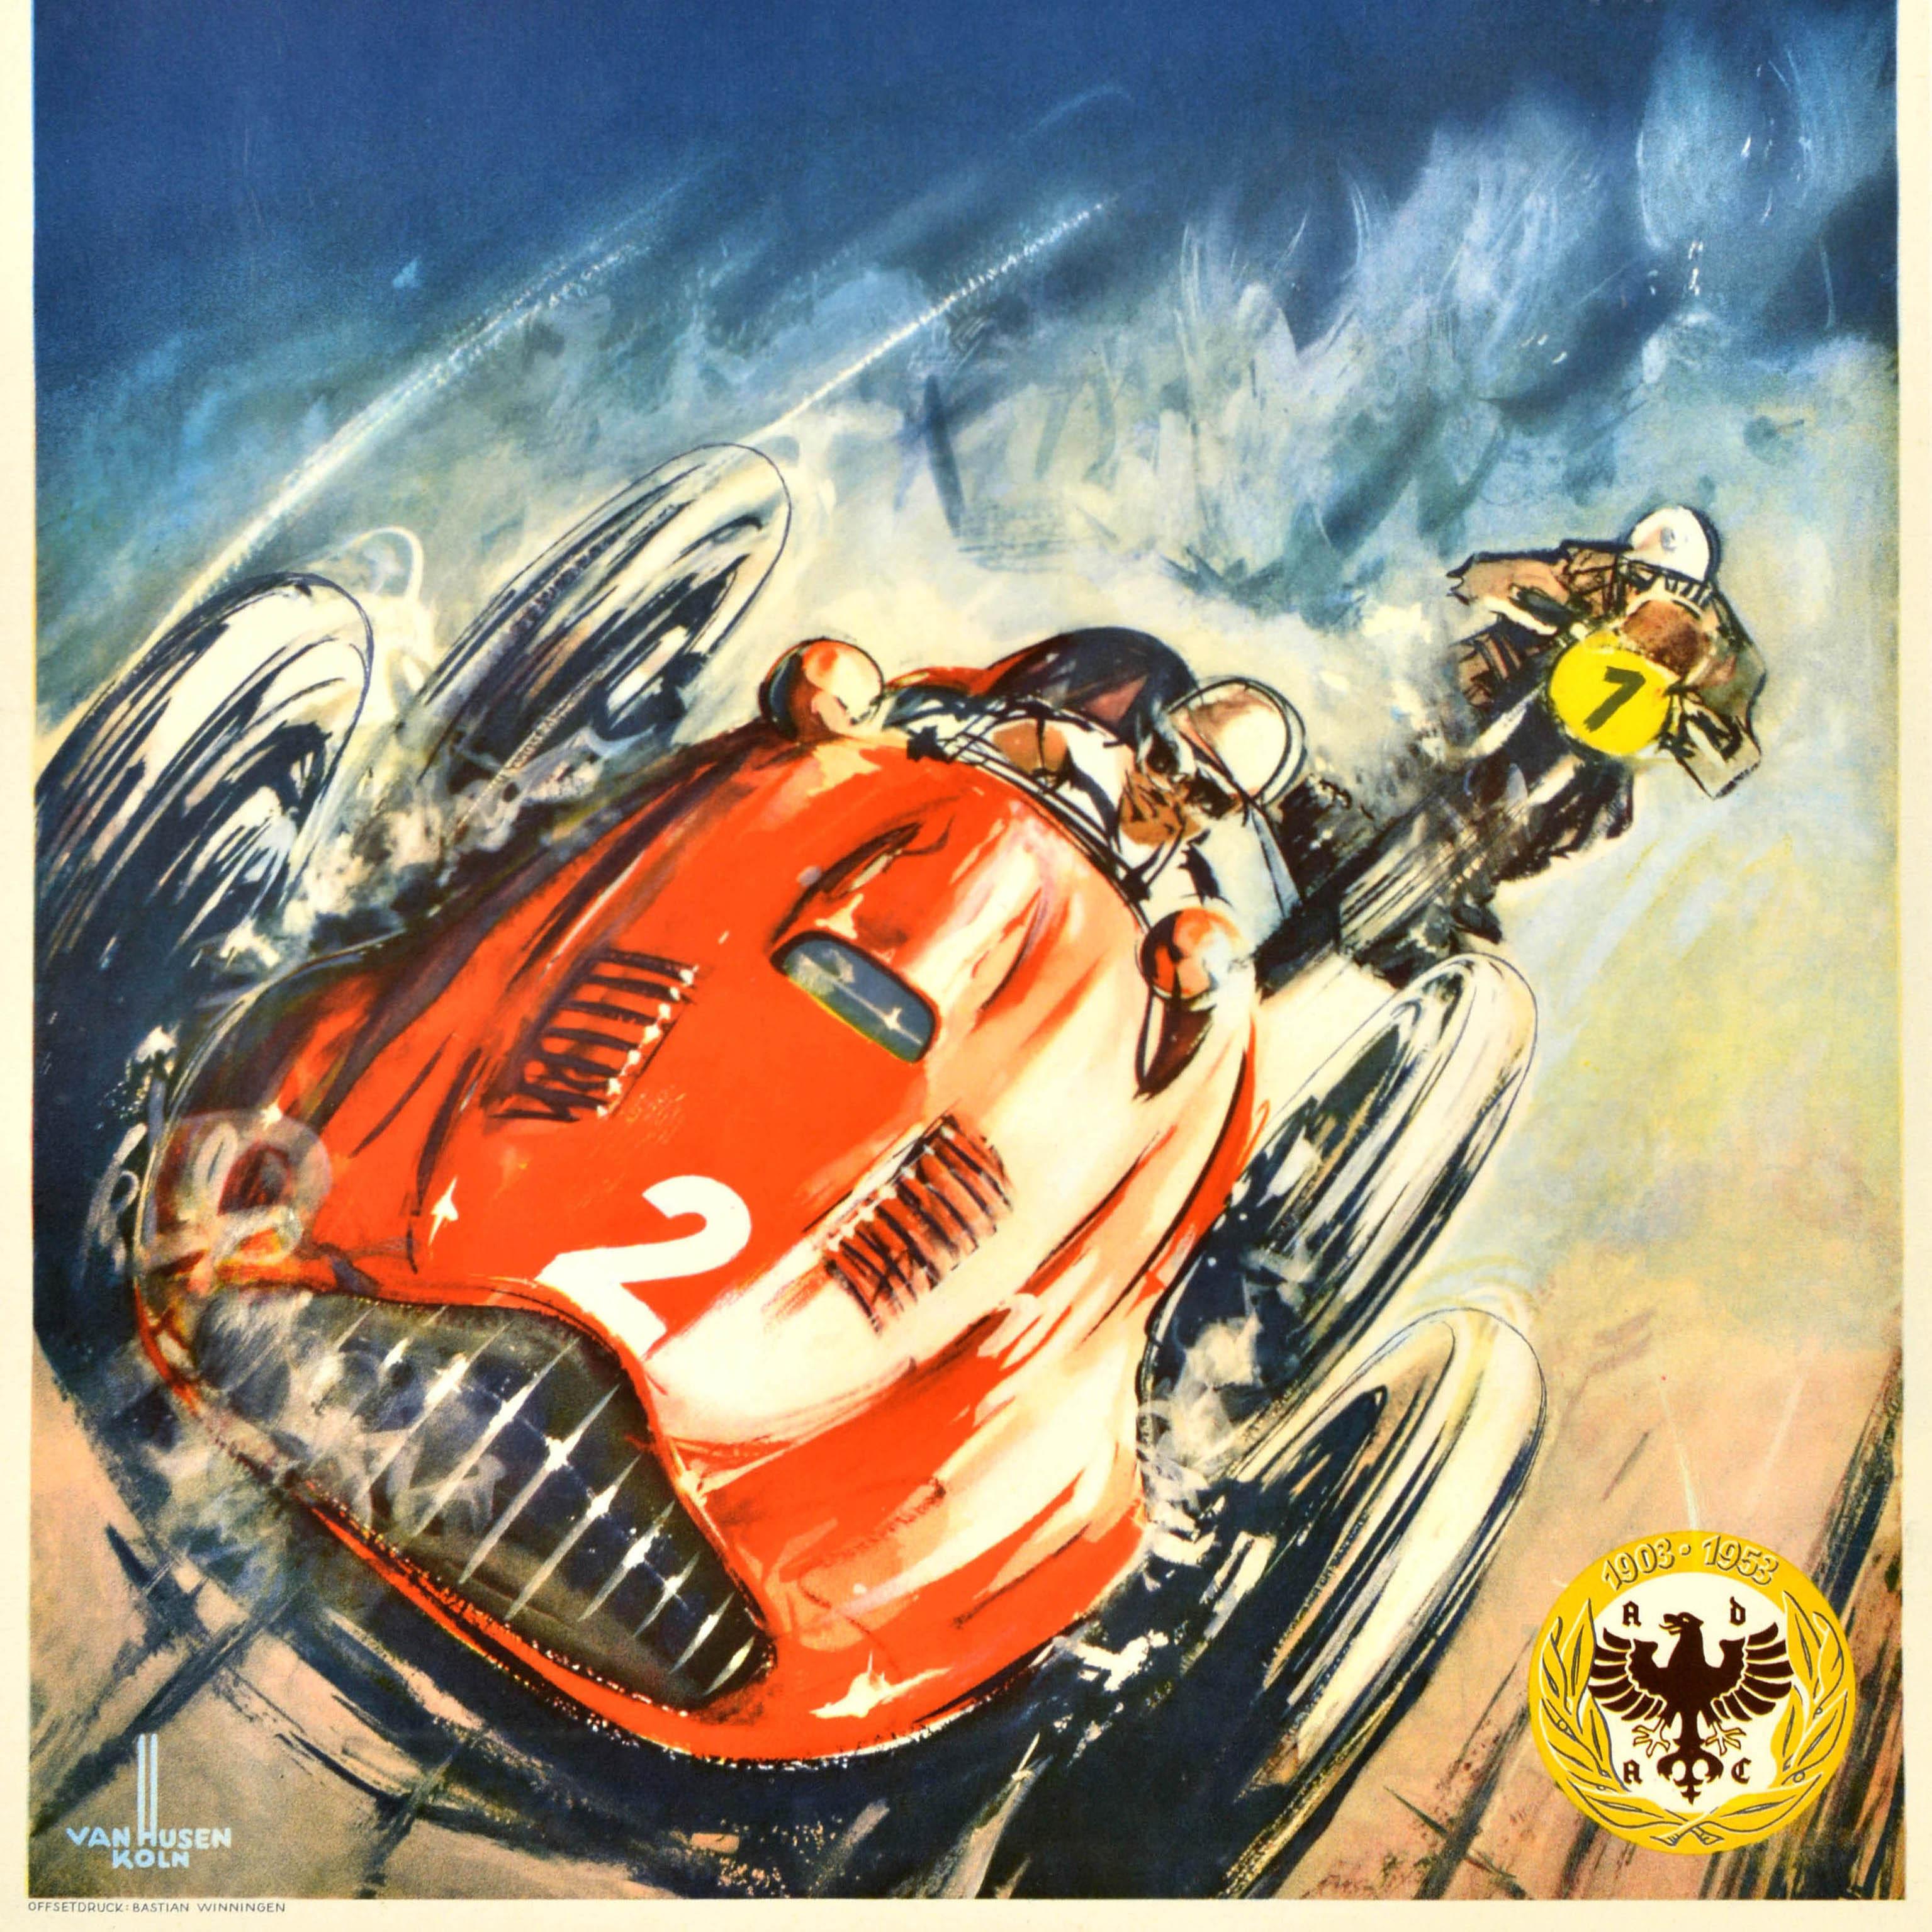 Originales Motorsportplakat für das XIX. Internationale ADAC Eifelrennen, das vom Allgemeinen Deutschen Automobil-Club (ADAC; gegründet 1903) am 26. August 1956 auf dem Nürburgring veranstaltet wurde. Das Plakat zeigt eine dynamische Illustration